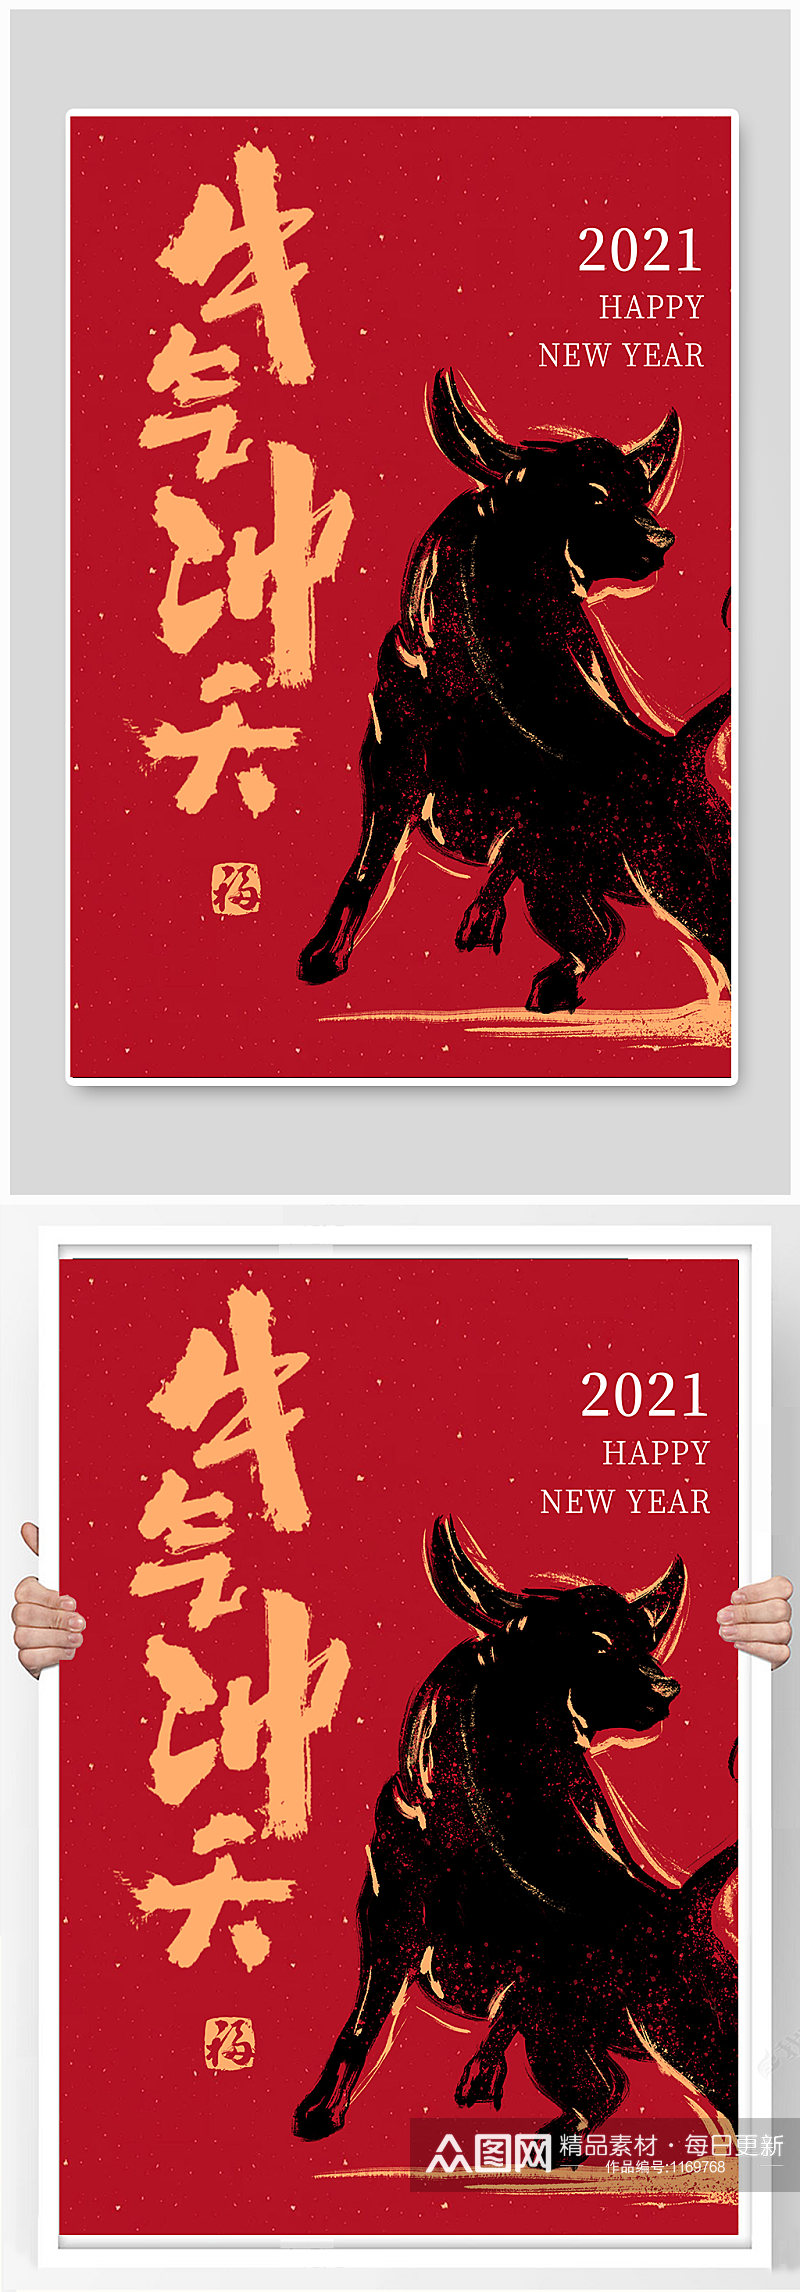 中国传统节日新年牛气冲天素材